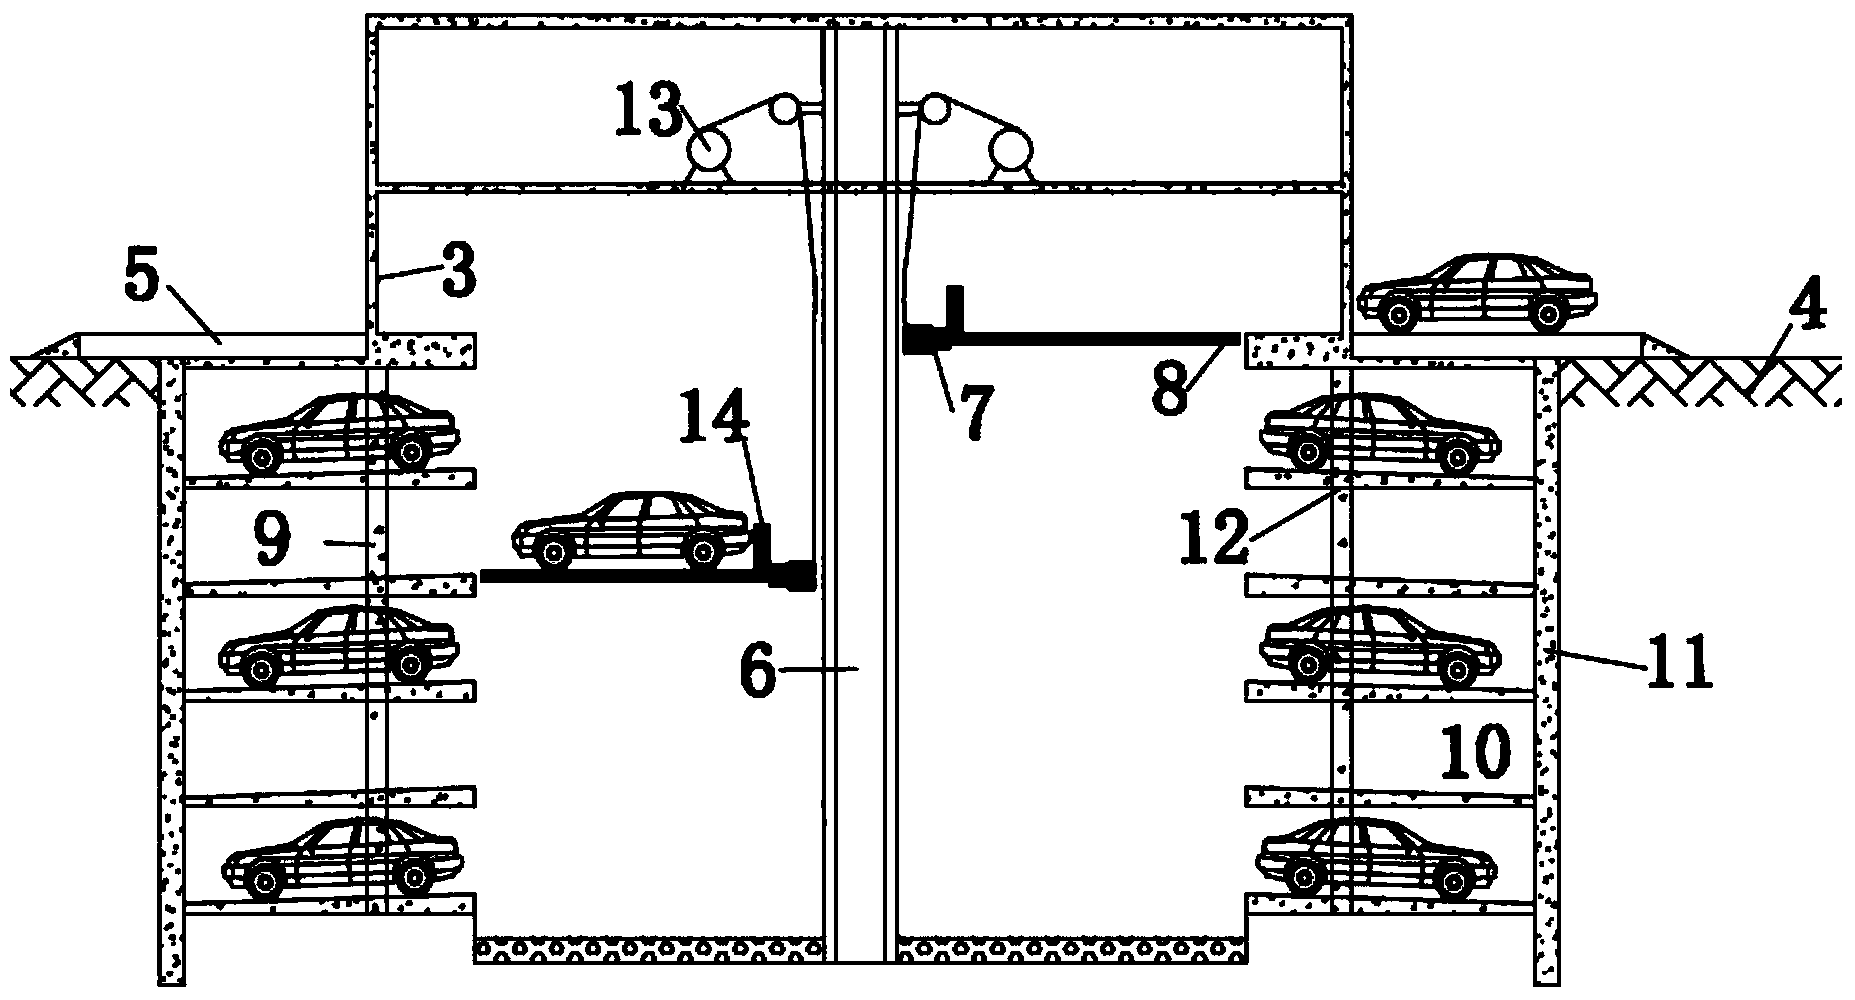 Underground vertical shaft type intelligent stereoscopic garage